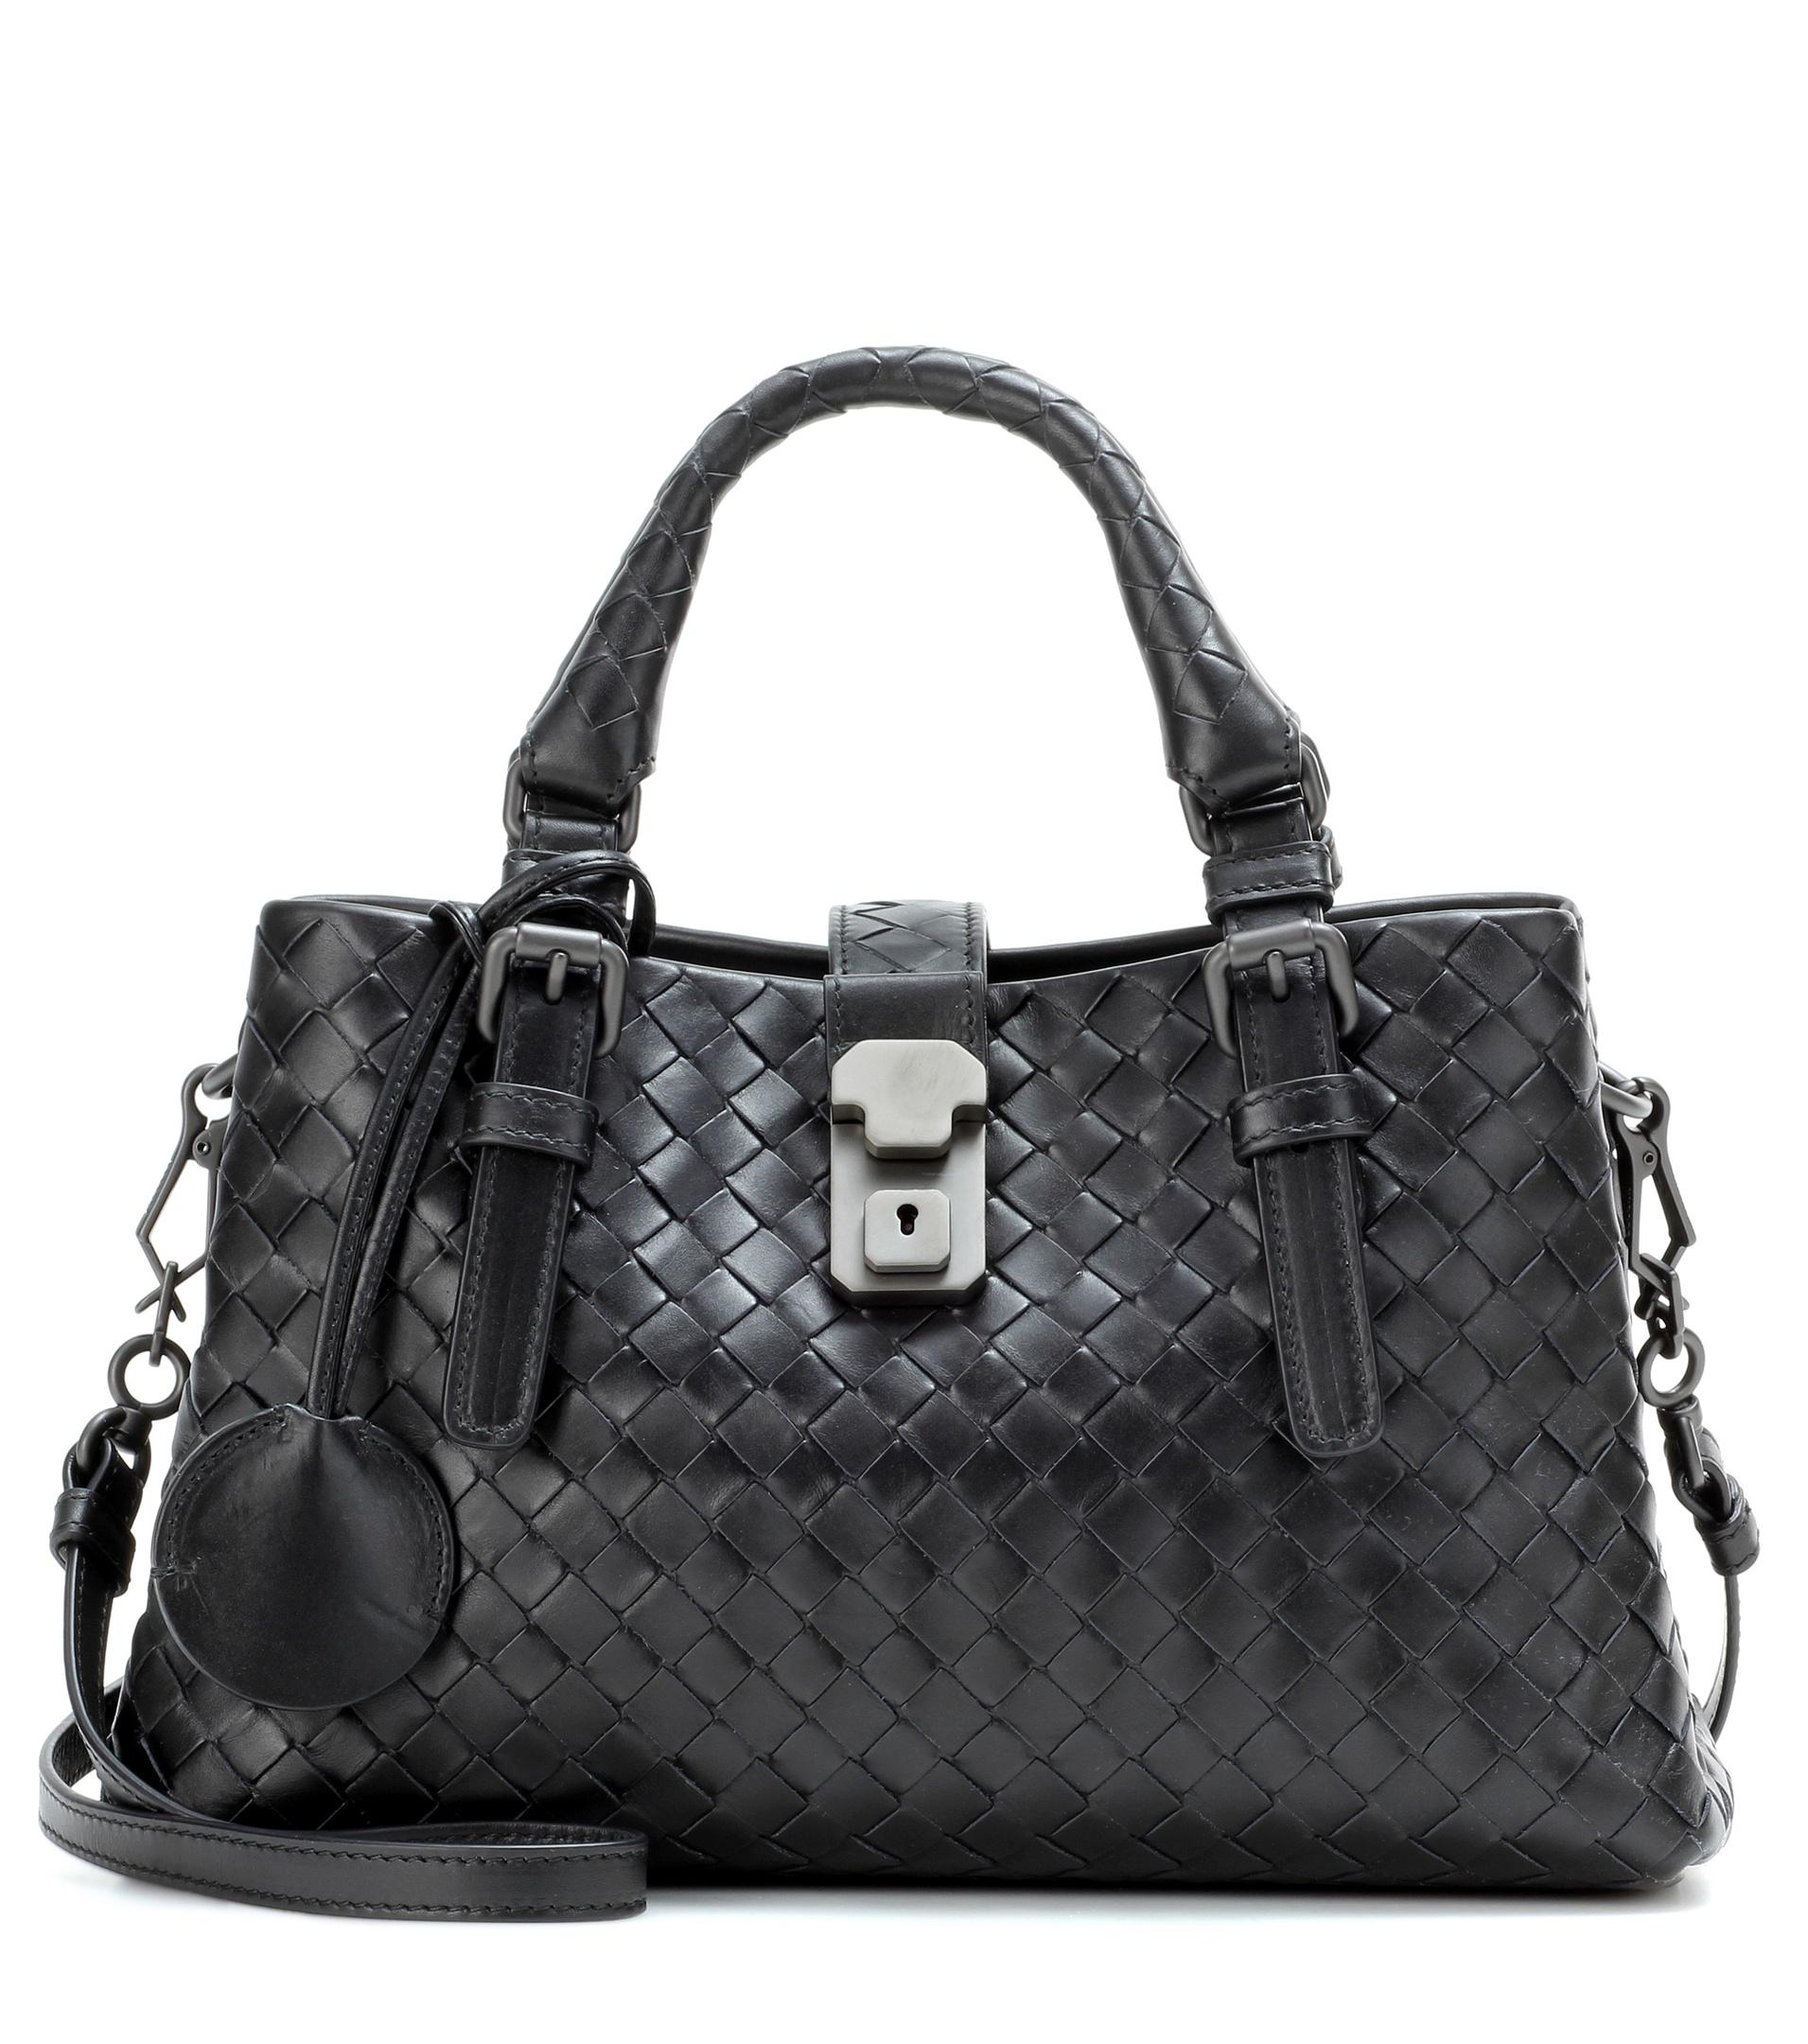 Bottega Veneta Intrecciato Leather Shoulder Bag in Black - Lyst